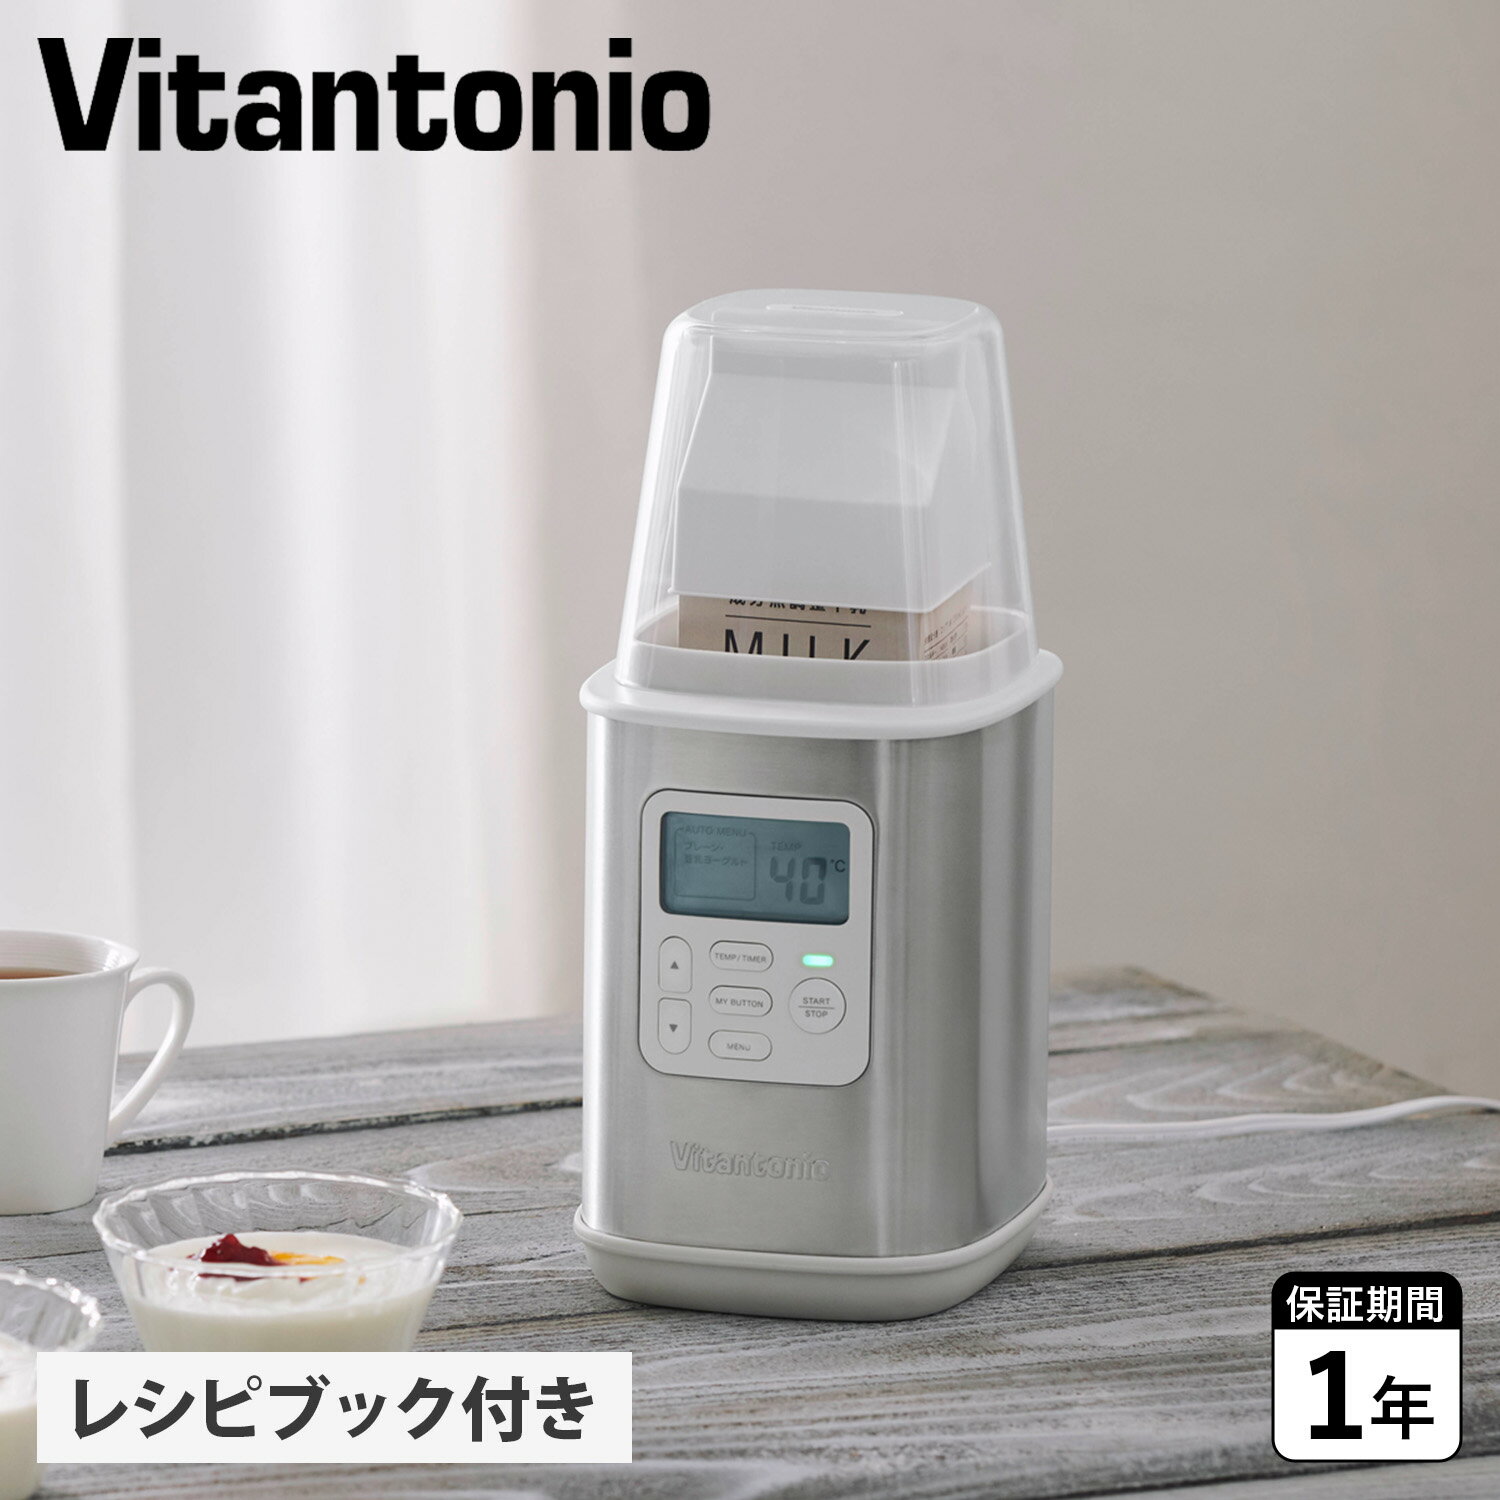 ビタントニオ Vitantonio ヨーグルトメーカー 発酵フードメーカー 水切り 牛乳パック対応 コンパクト 低温調理 手作り 自家製 VYG-60